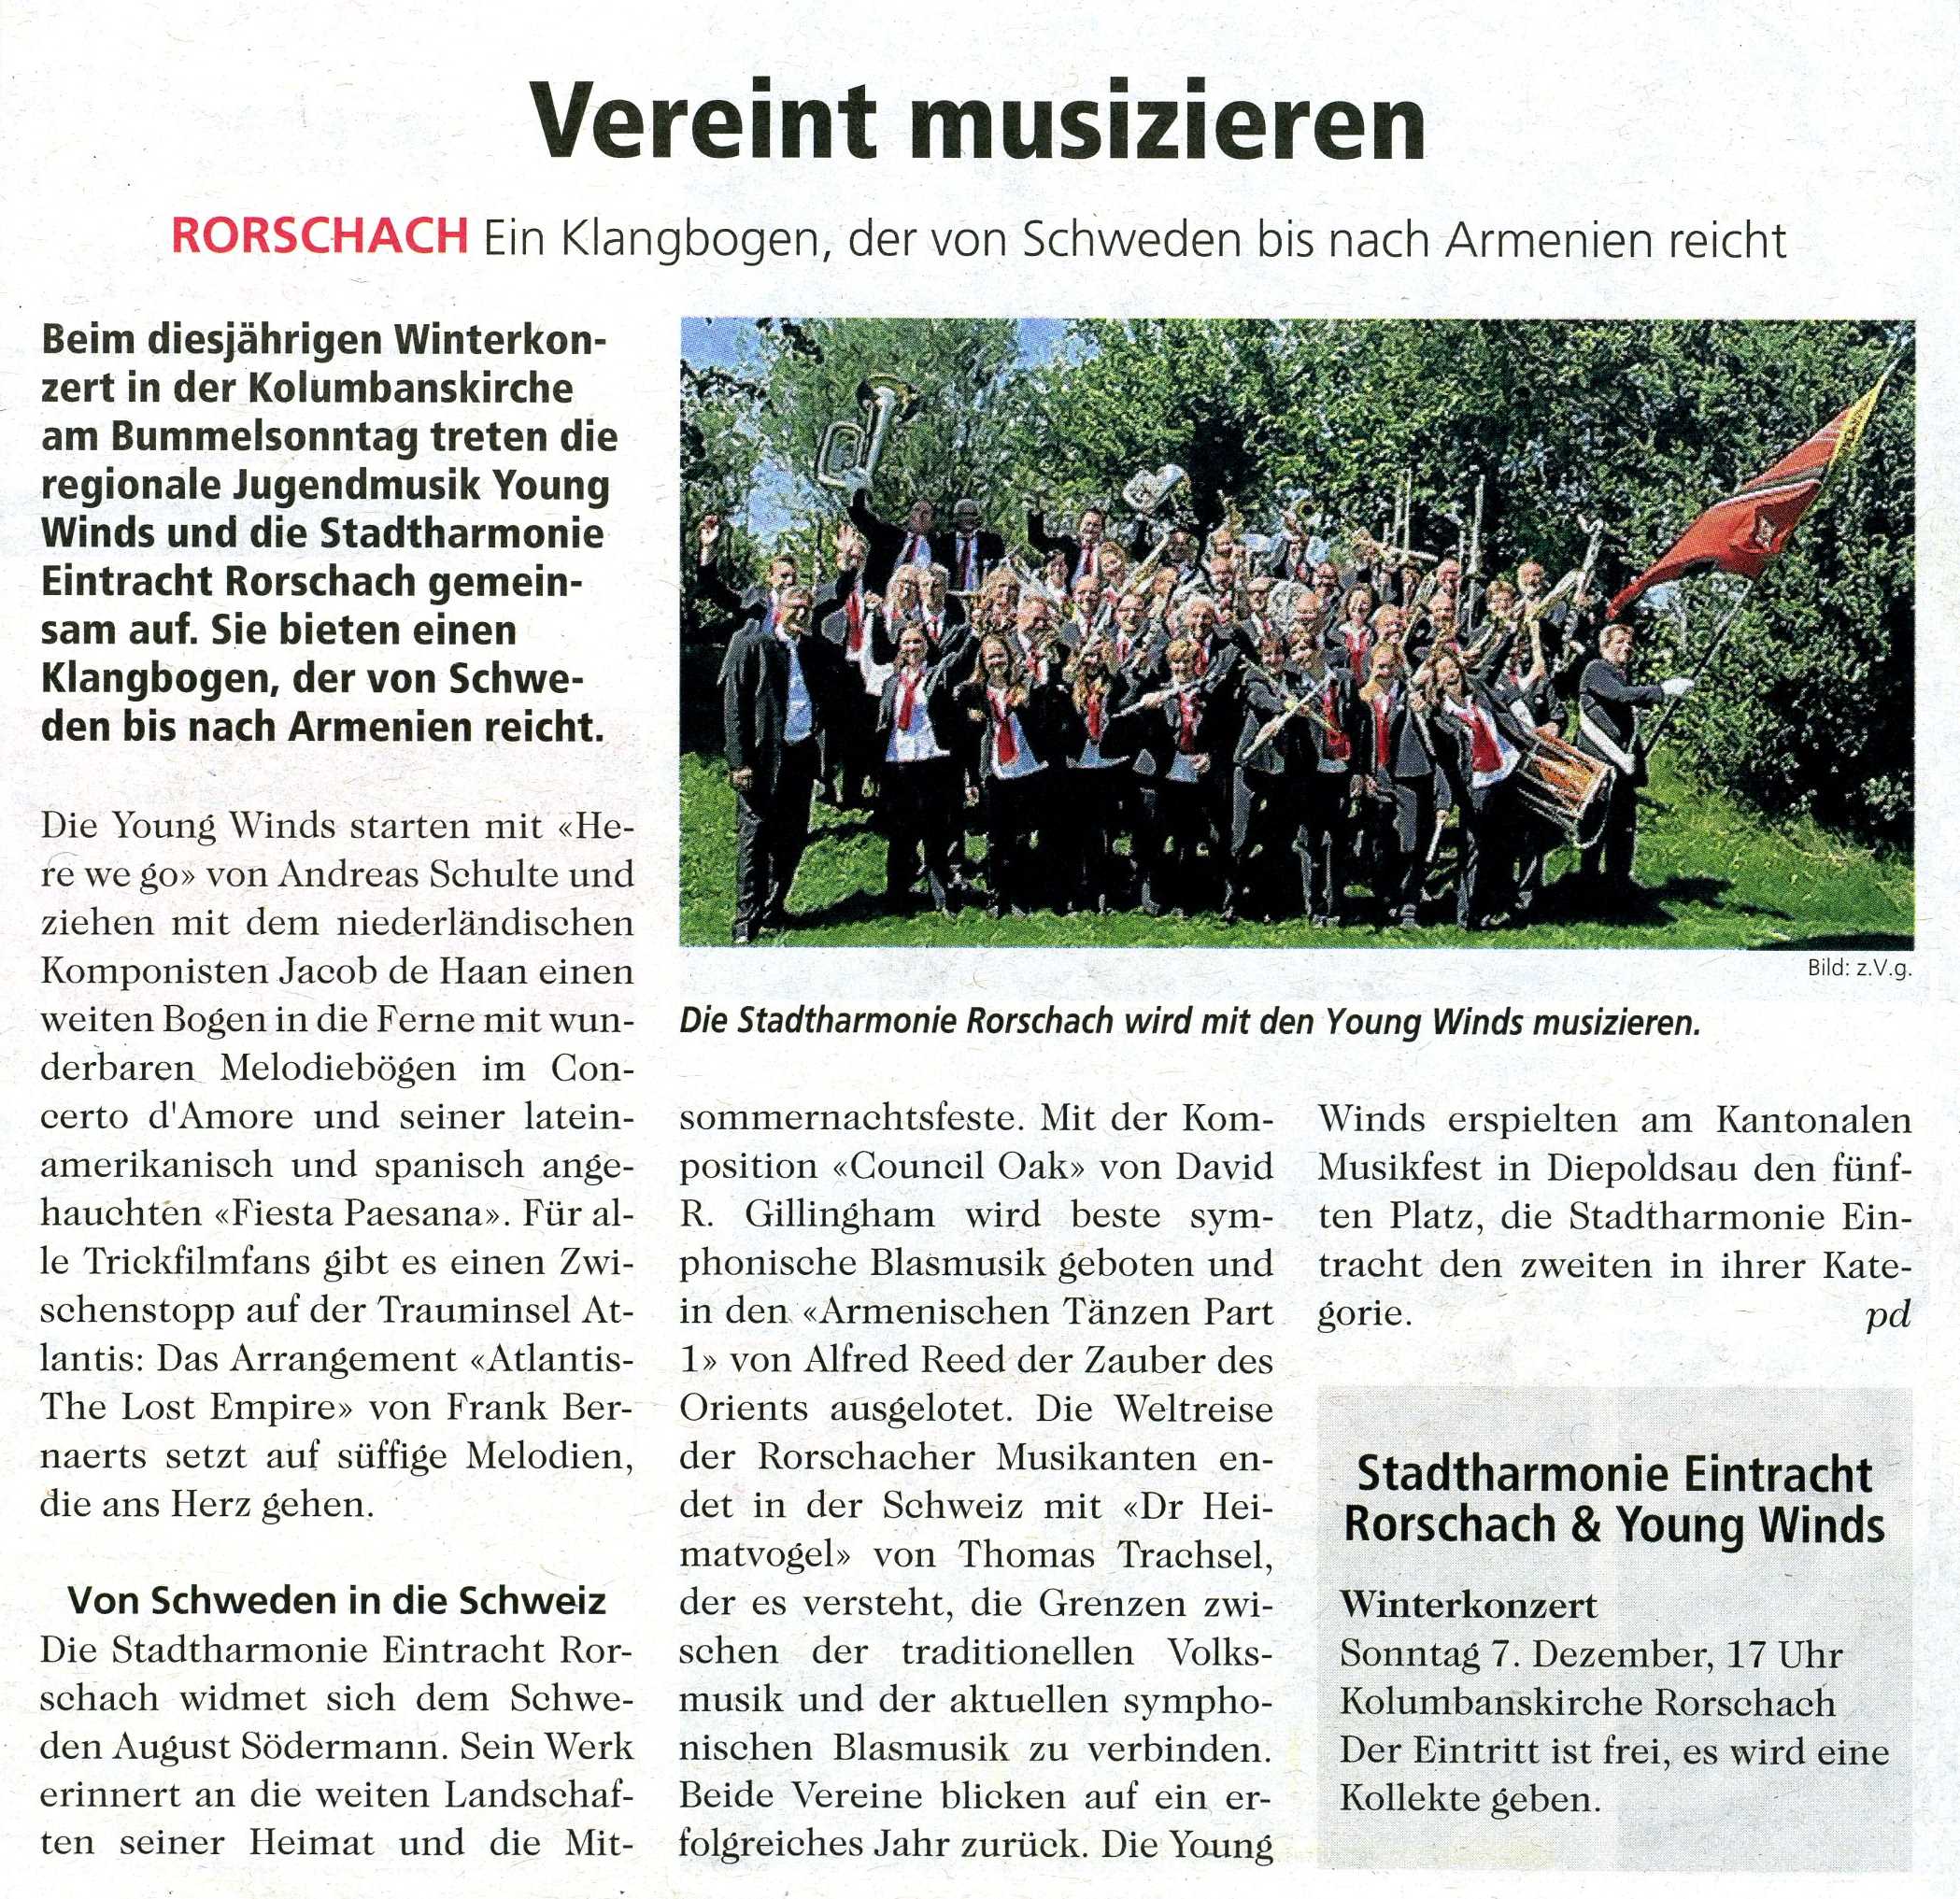 Vereint Musizieren - Vorschau auf das Winterkonzert der Stadtharmonie Eintracht